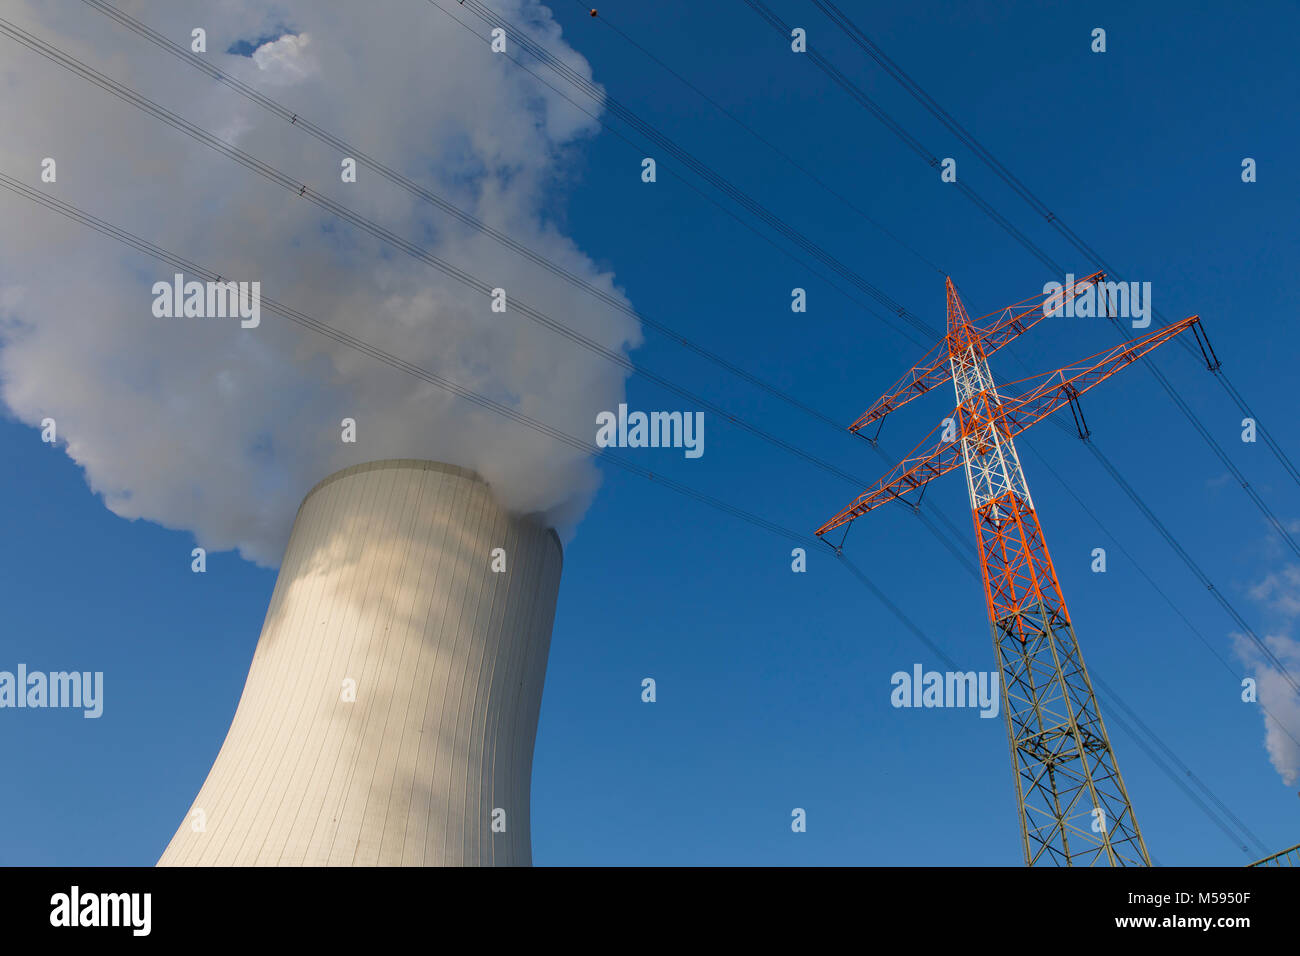 Kühlturm des Kohlekraftwerk Duisburg-Walsum von der STEAG und EVN AG, 181 Meter hoch, Wasserdampf, Cloud, Power Transmission Line betrieben, Mast Stockfoto